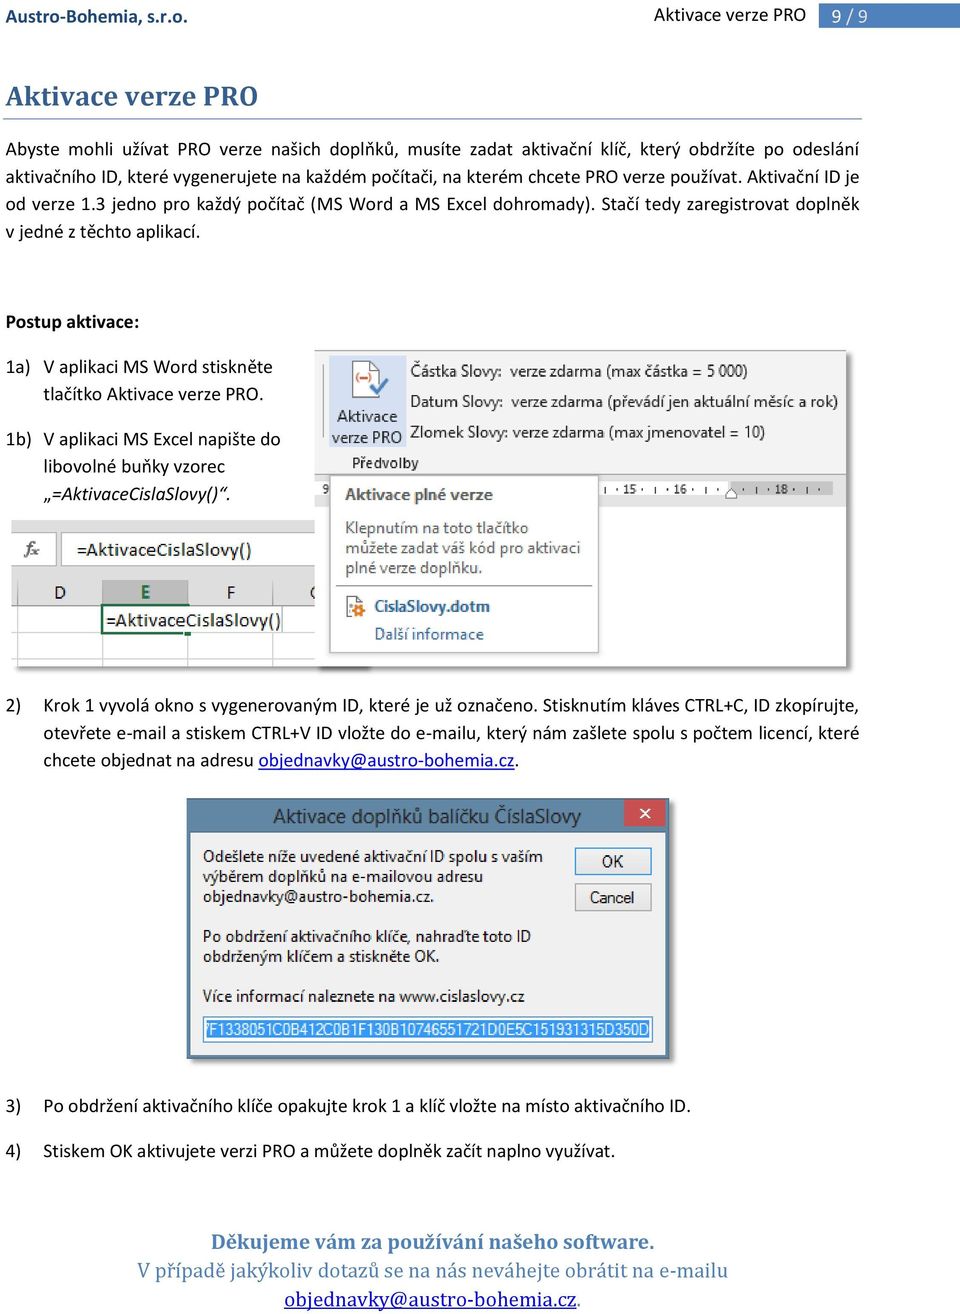 každém počítači, na kterém chcete PRO verze používat. Aktivační ID je od verze 1.3 jedno pro každý počítač (MS Word a MS Excel dohromady). Stačí tedy zaregistrovat doplněk v jedné z těchto aplikací.